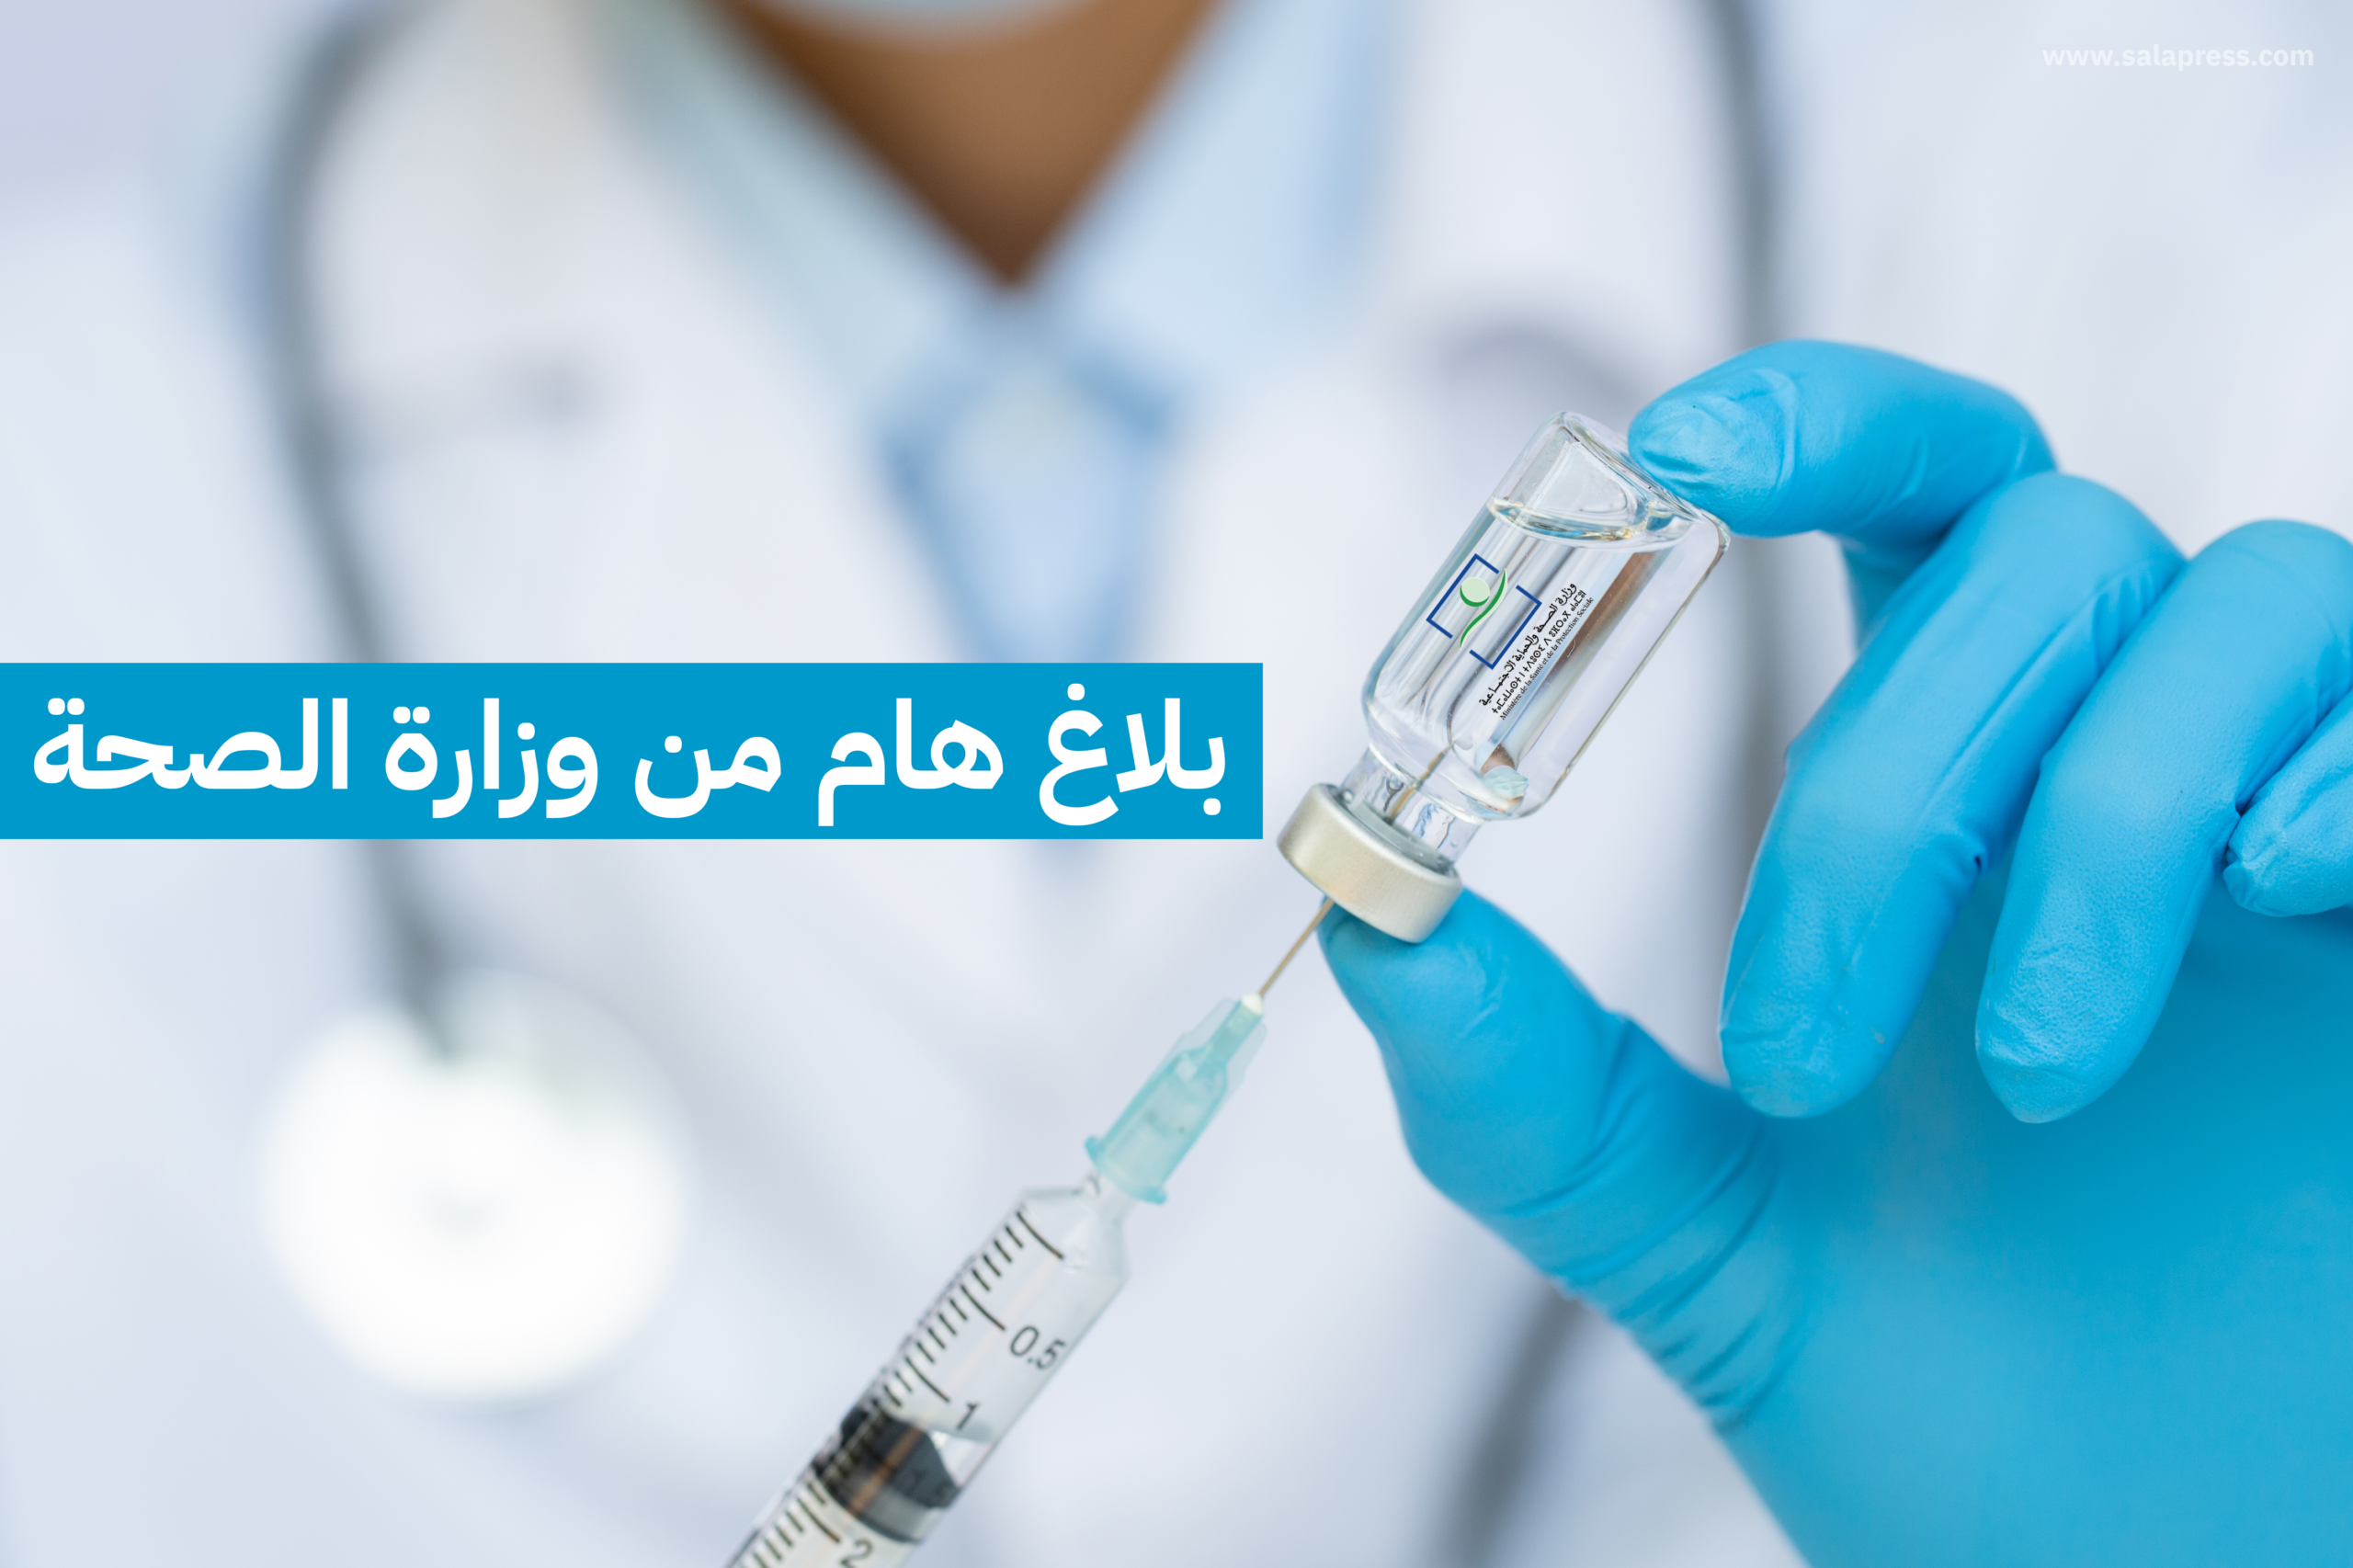 بلاغ وزارة الصحة المغربية الحصبة